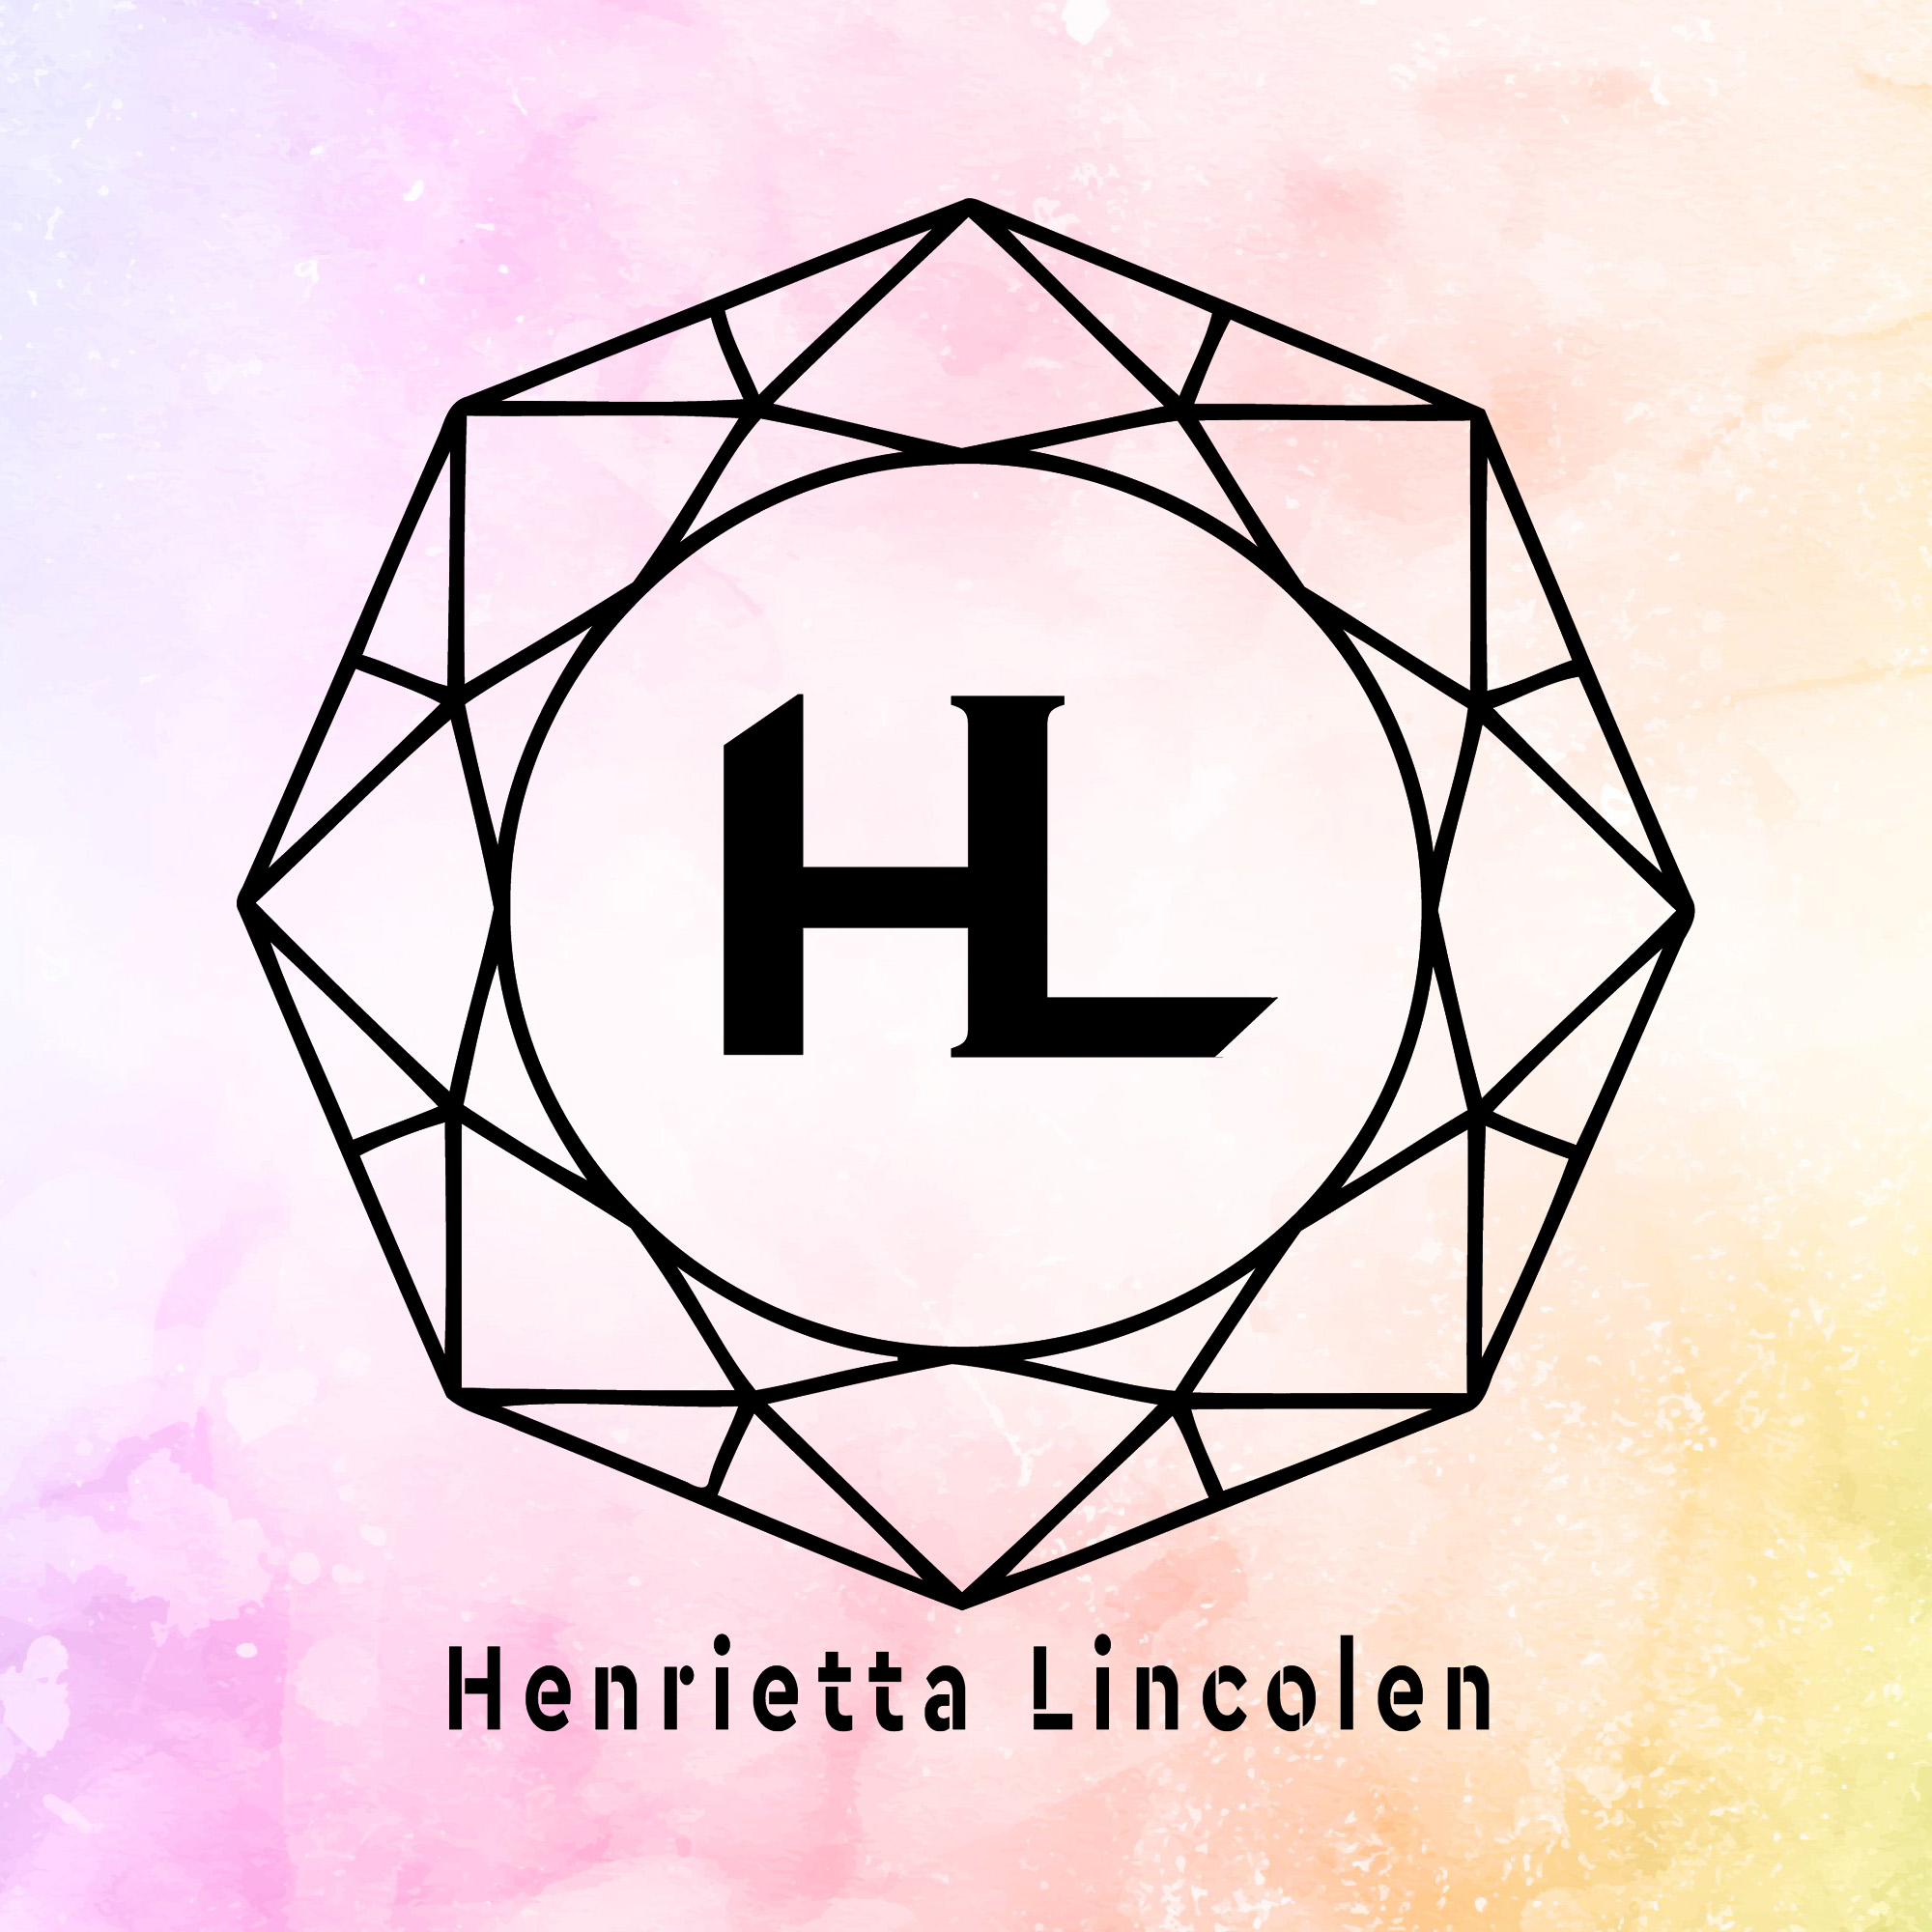 Henrietta Lincolen